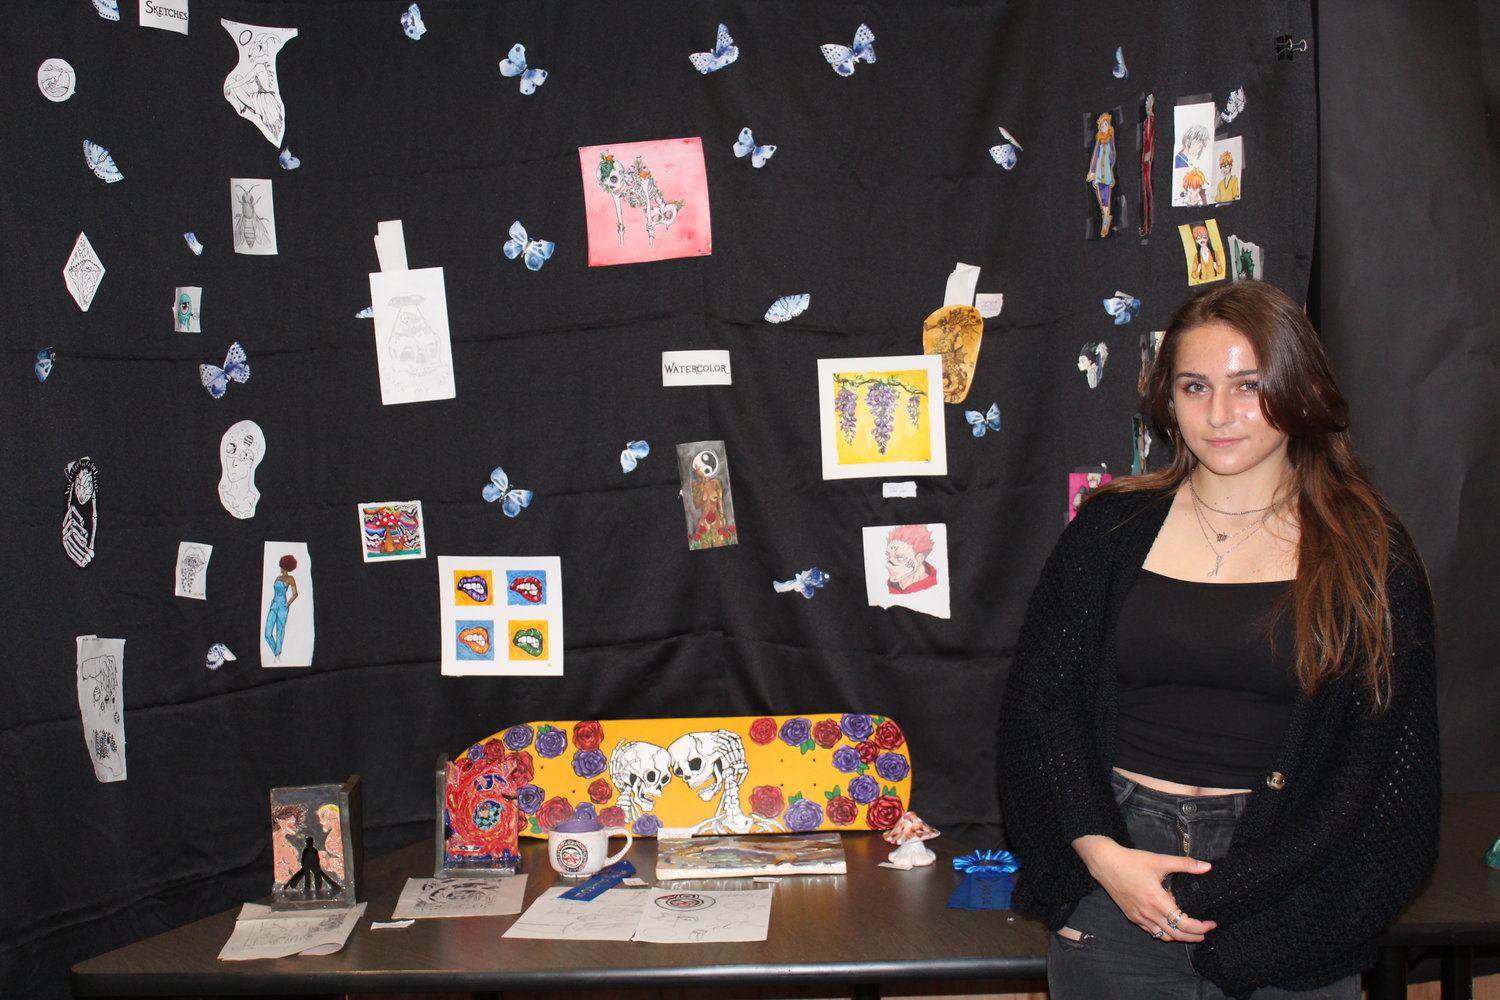 Kylie Lovrich won 1st place in senior art displays.